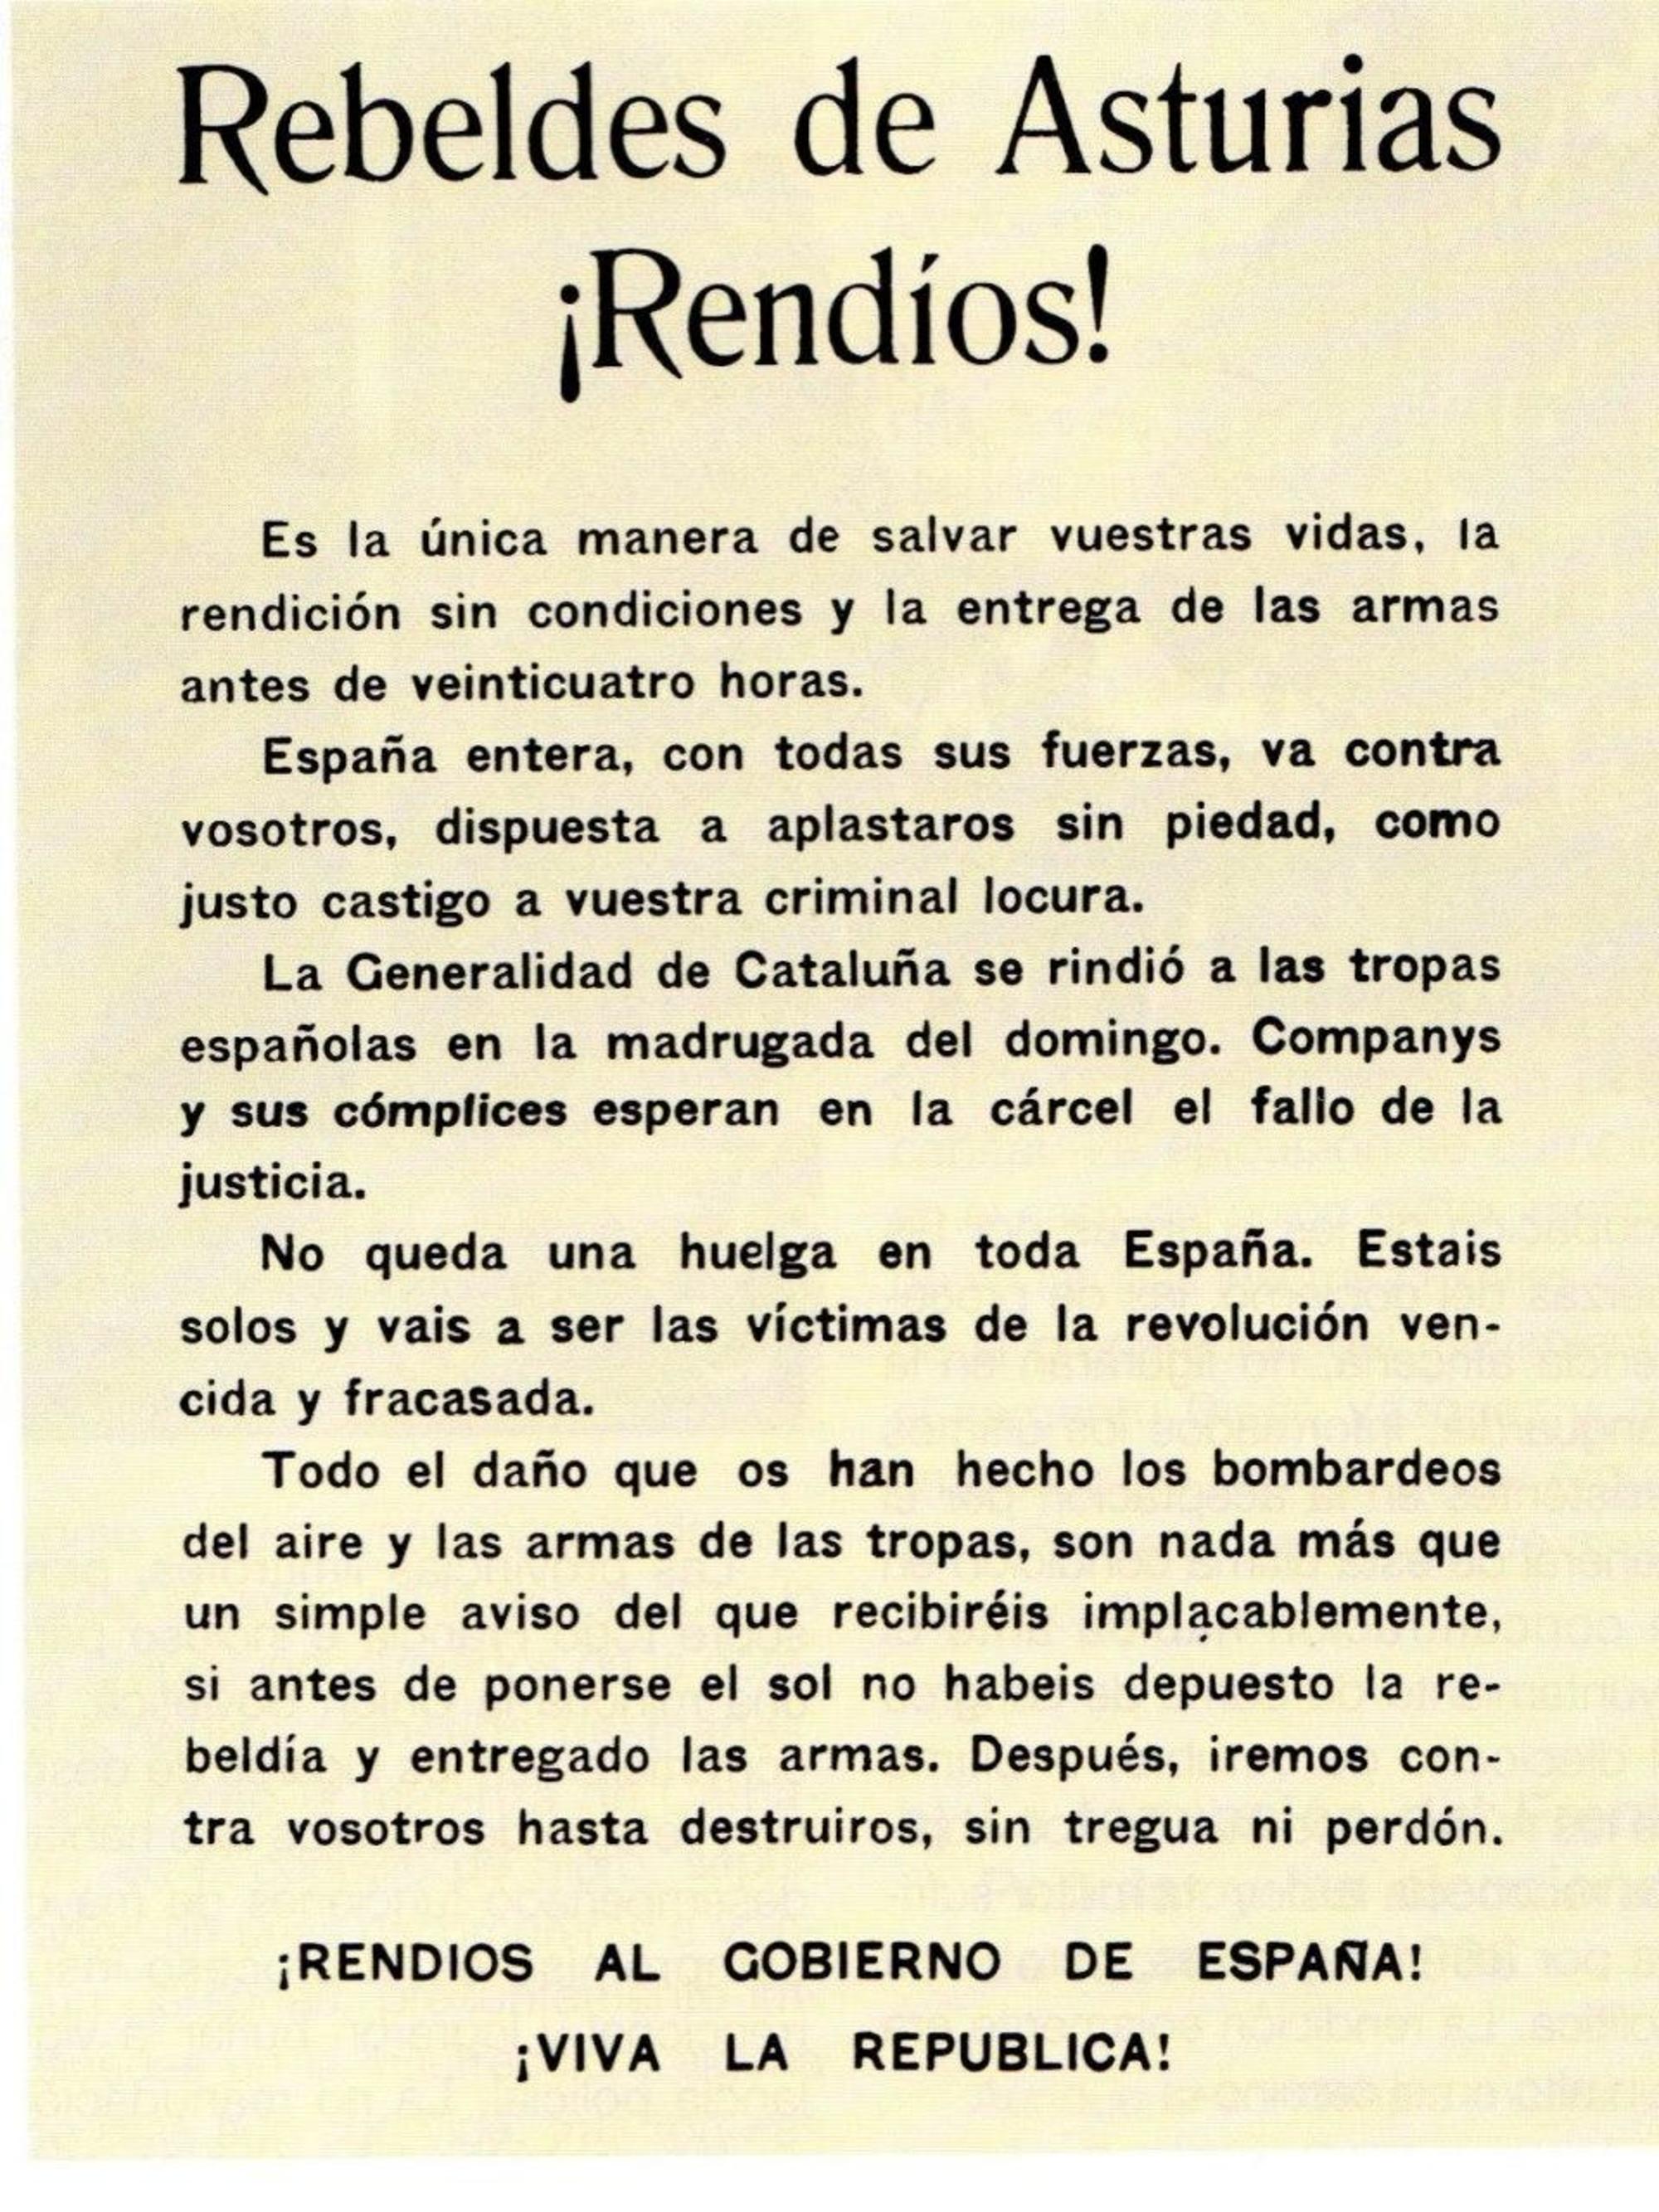 Octavilla arrojada por la aviación republicana sobre Asturies en la represión de la revolución de Octubre de 1934.